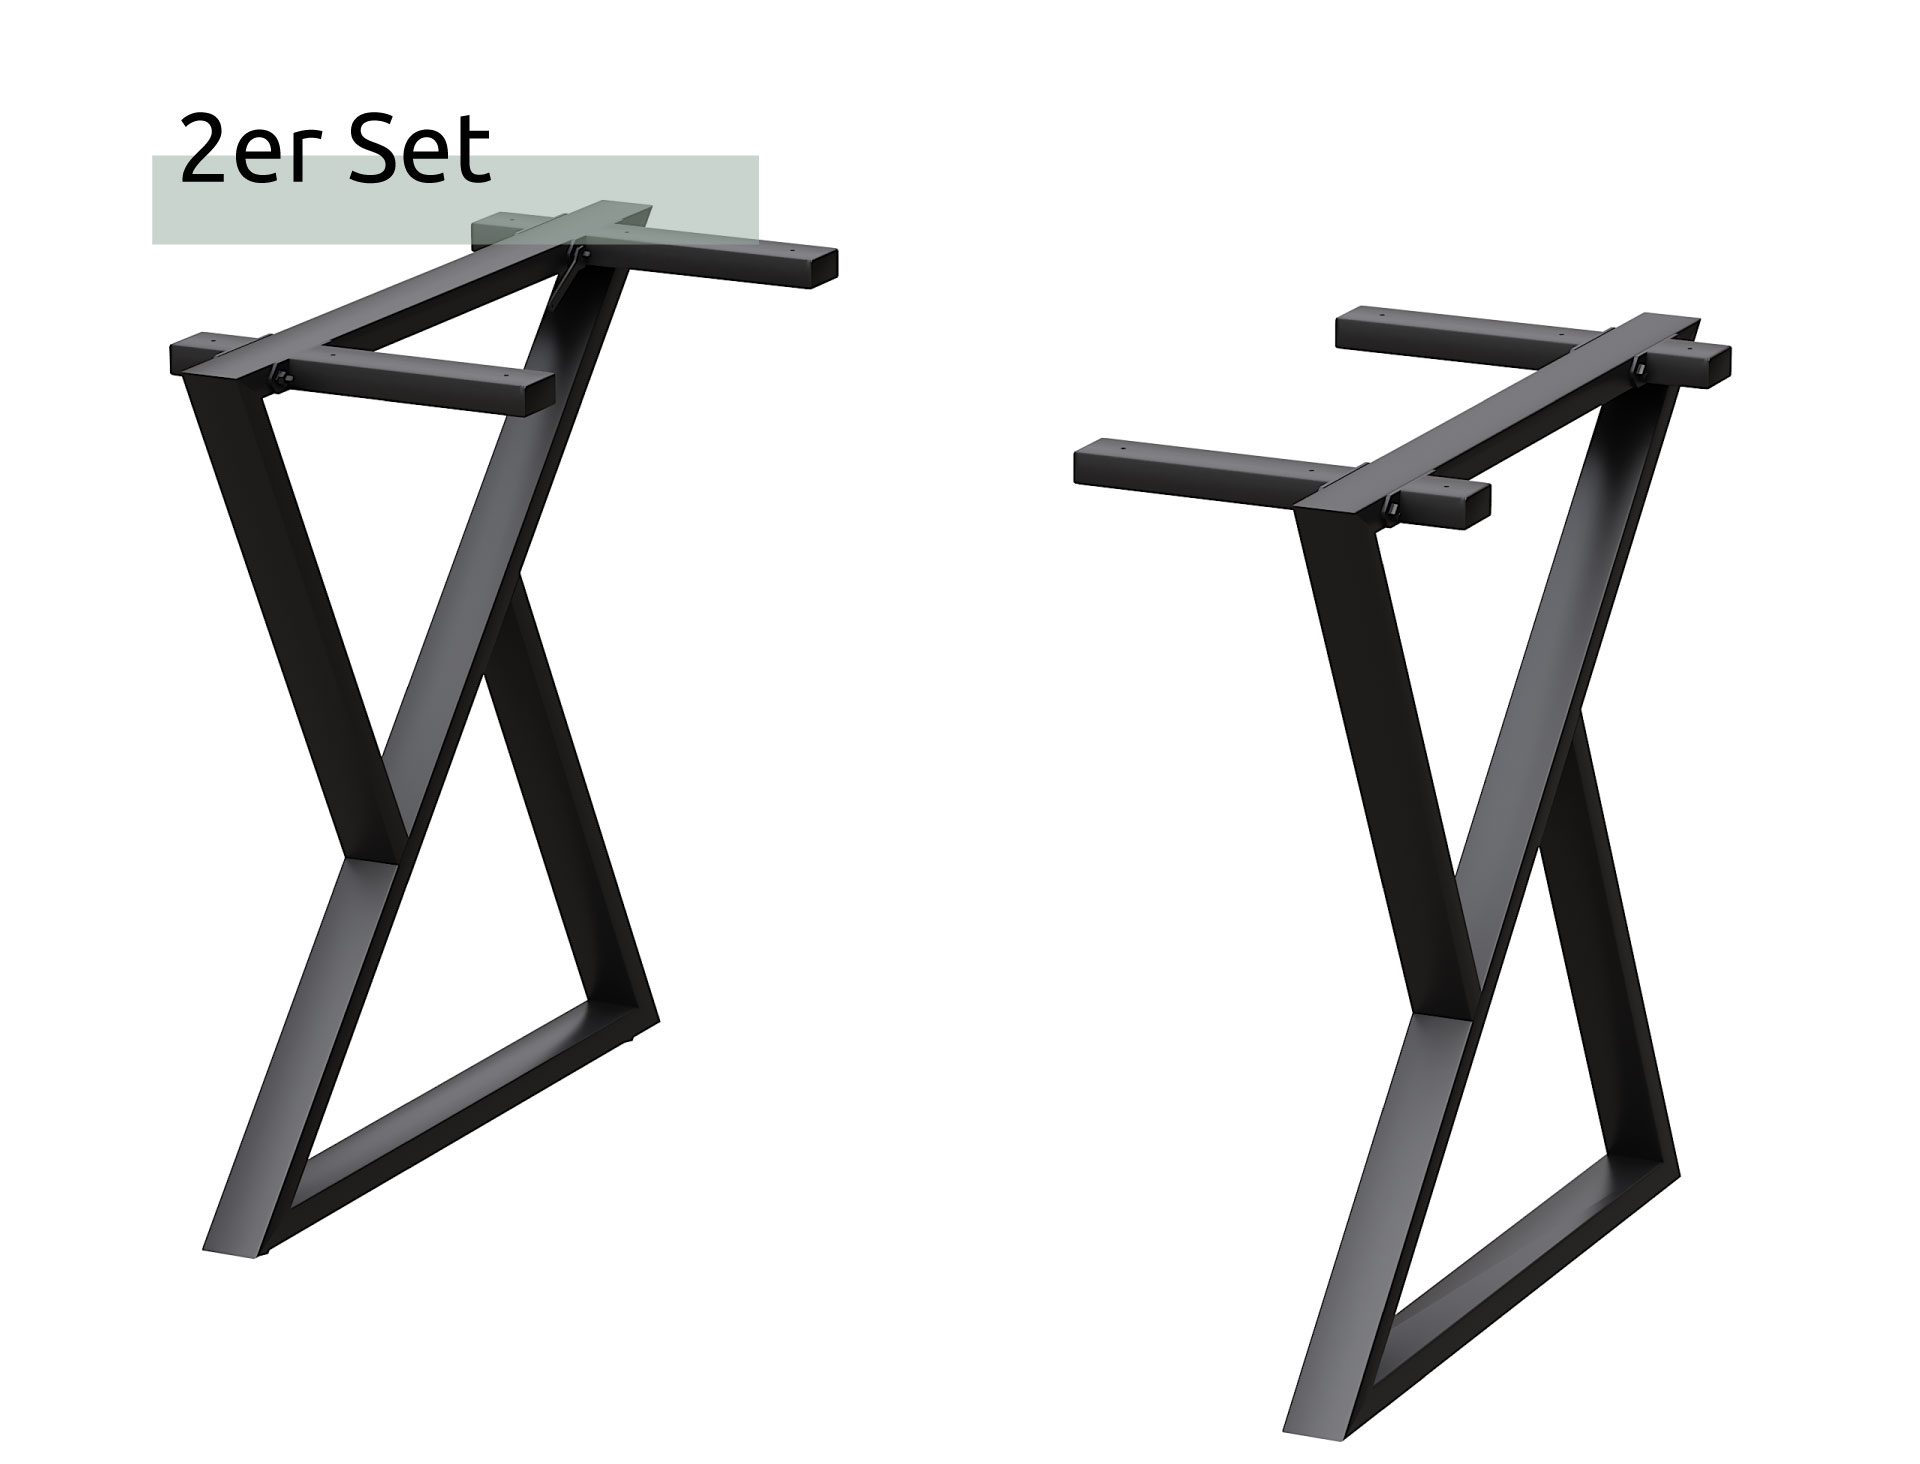 Doppel-Dreieck Tischgestell Metall schwarz – 1 Paar (2 Stück)